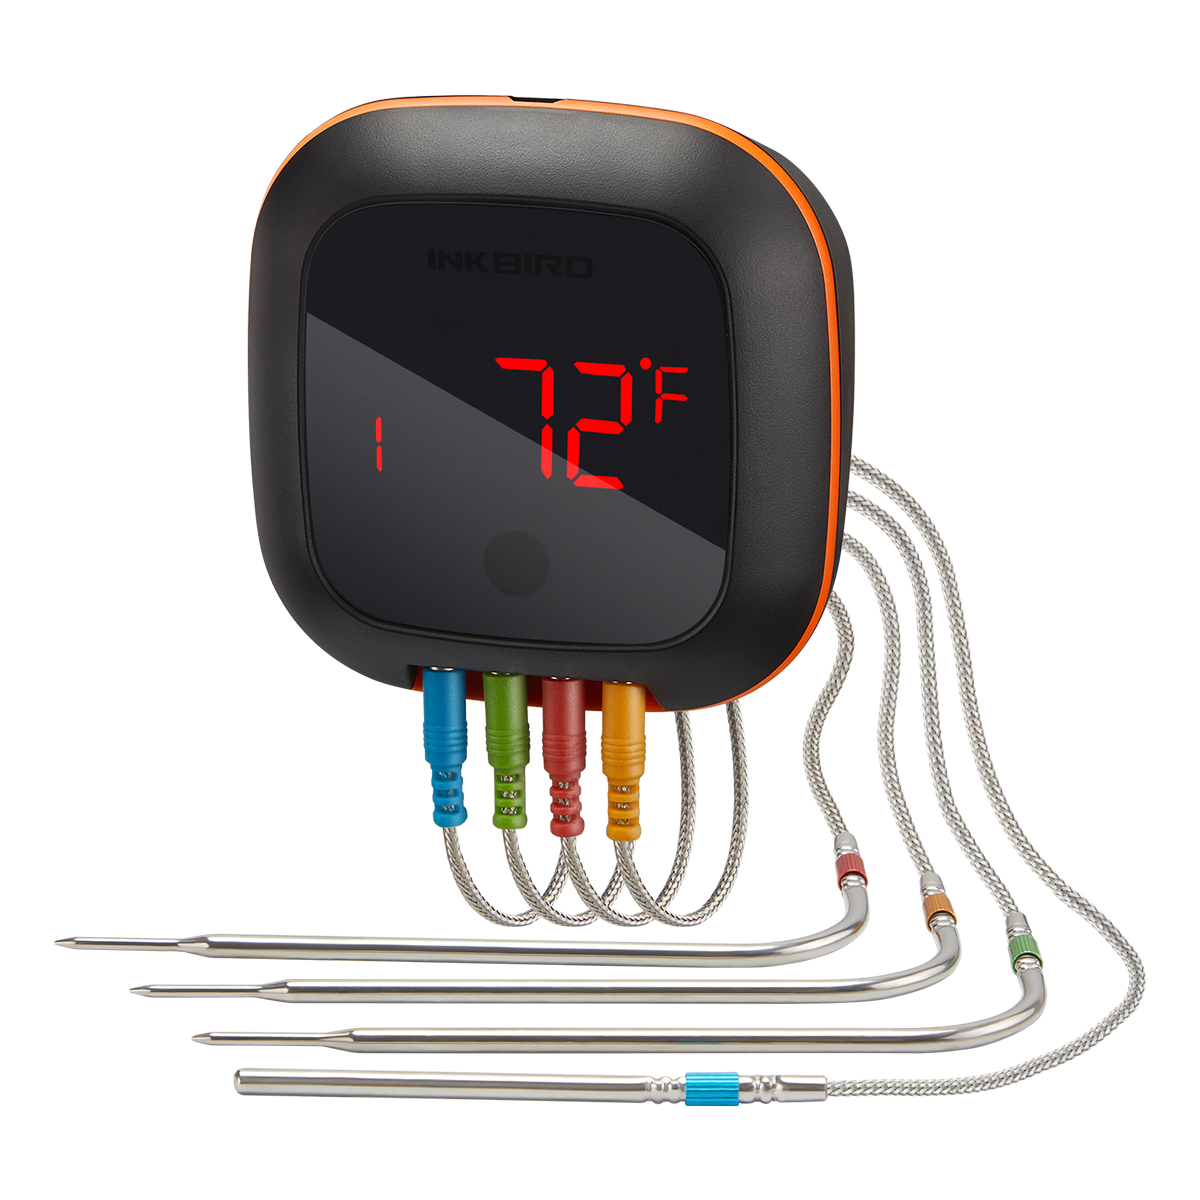 Inkbird IBT-4XS Bluetooth Wireless Grill BBQ Thermometer